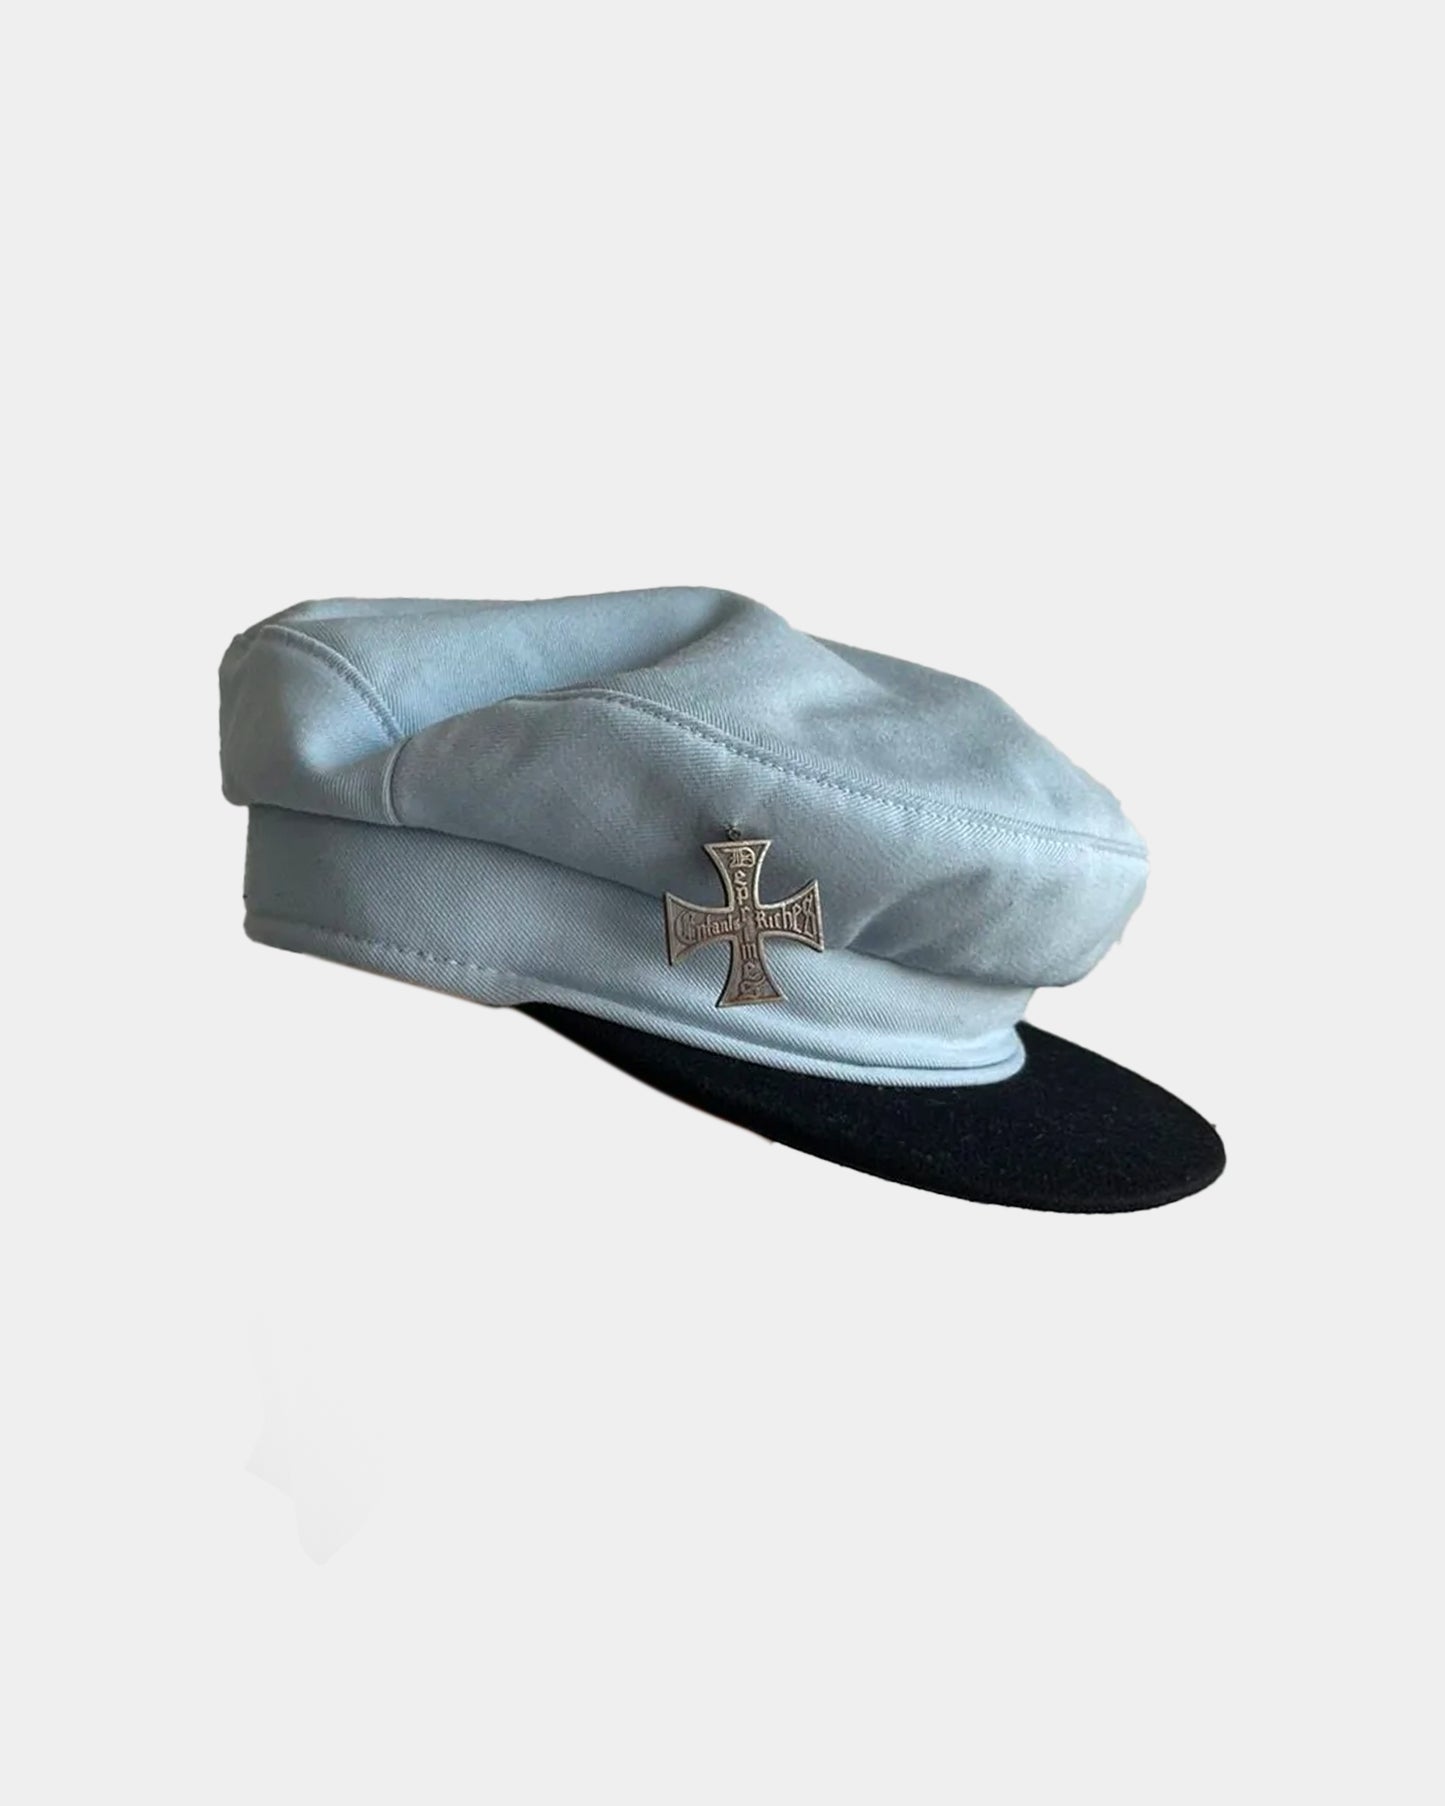 ERD RUNWAY Military Sailor Cap Hat With Pin *RARE *